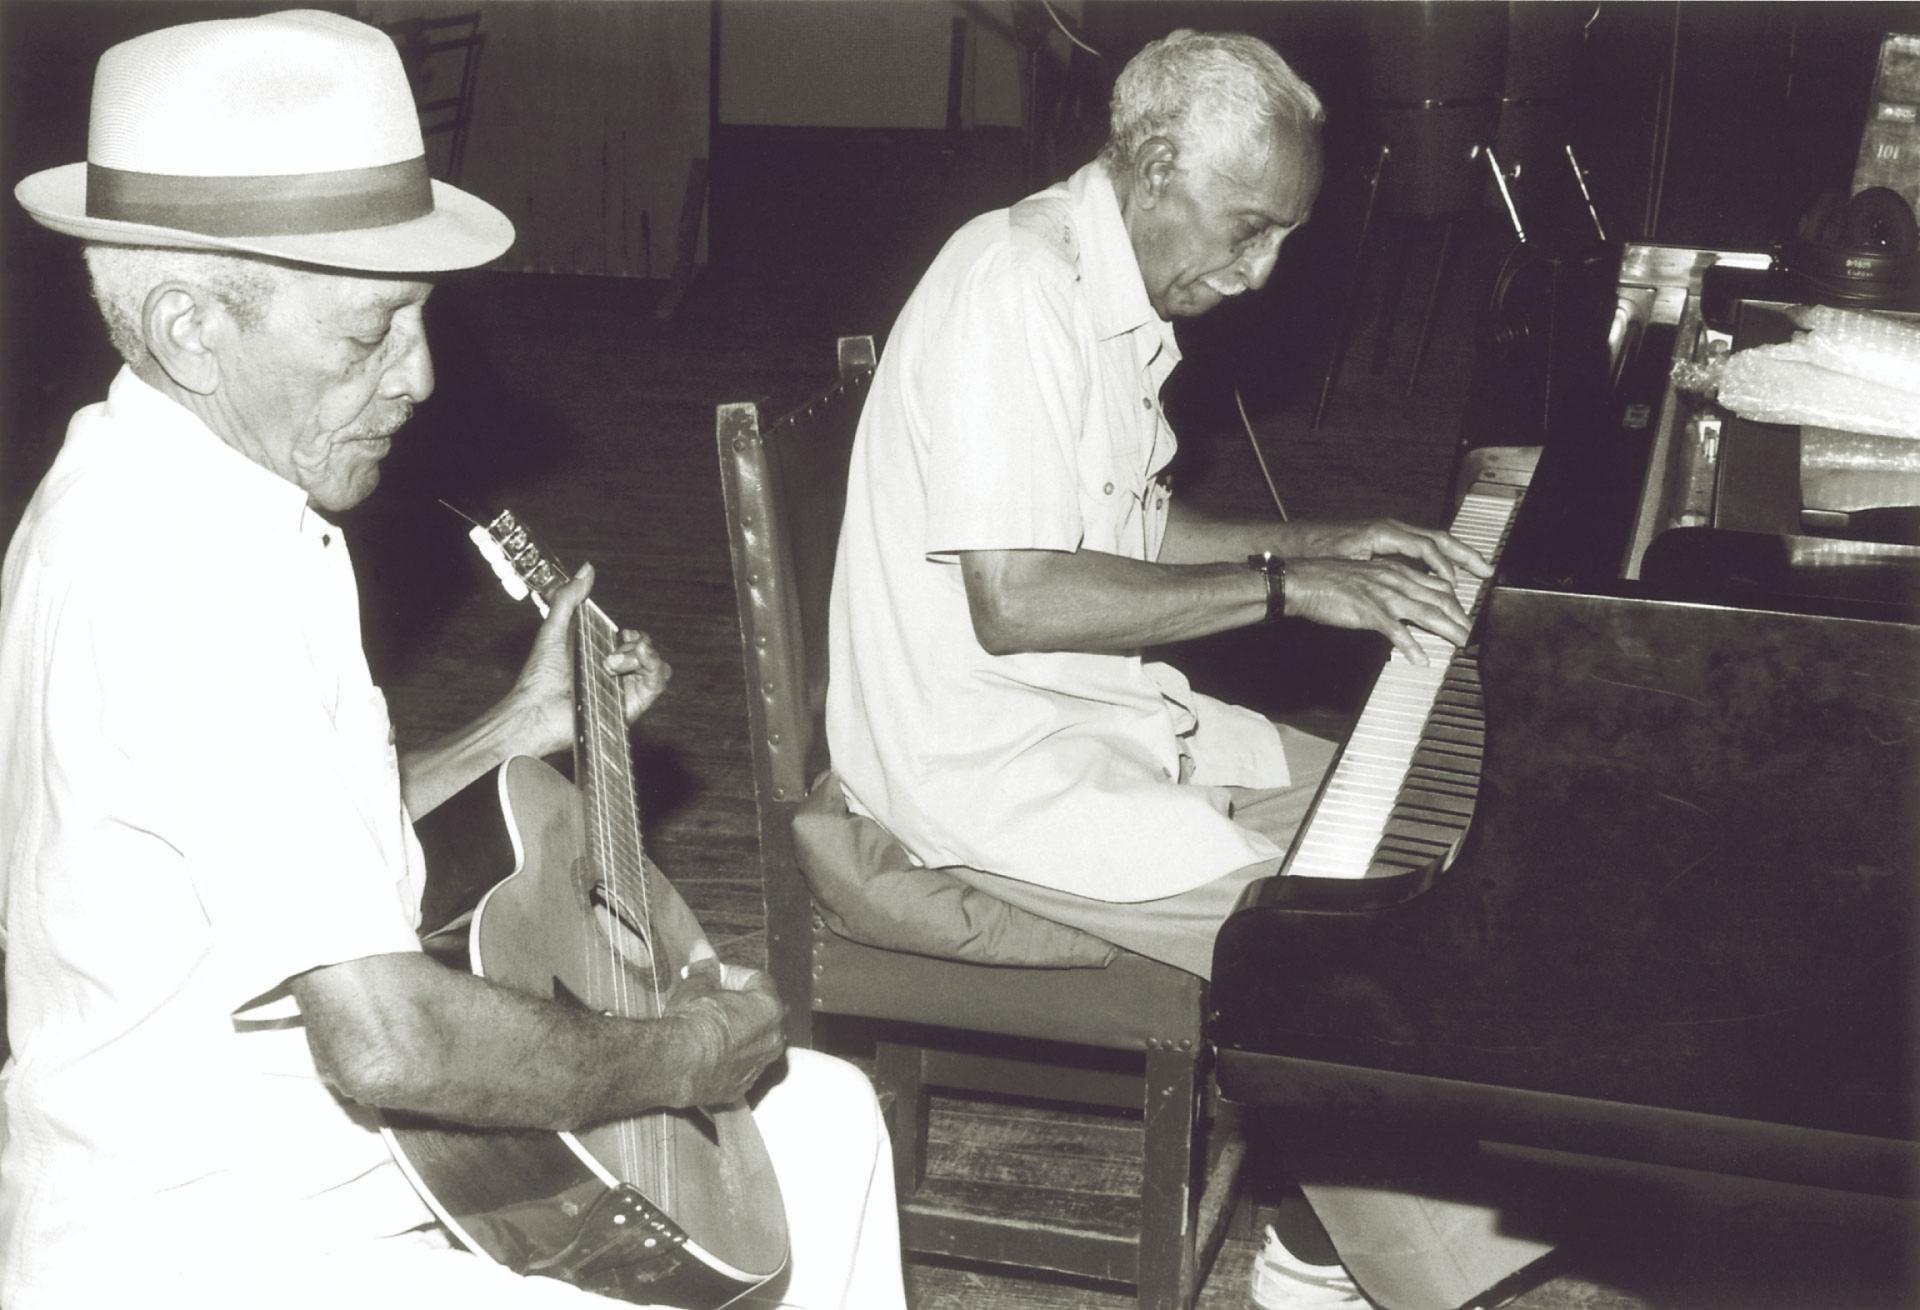 Compay Segundo and Rubén González rehearse together. 